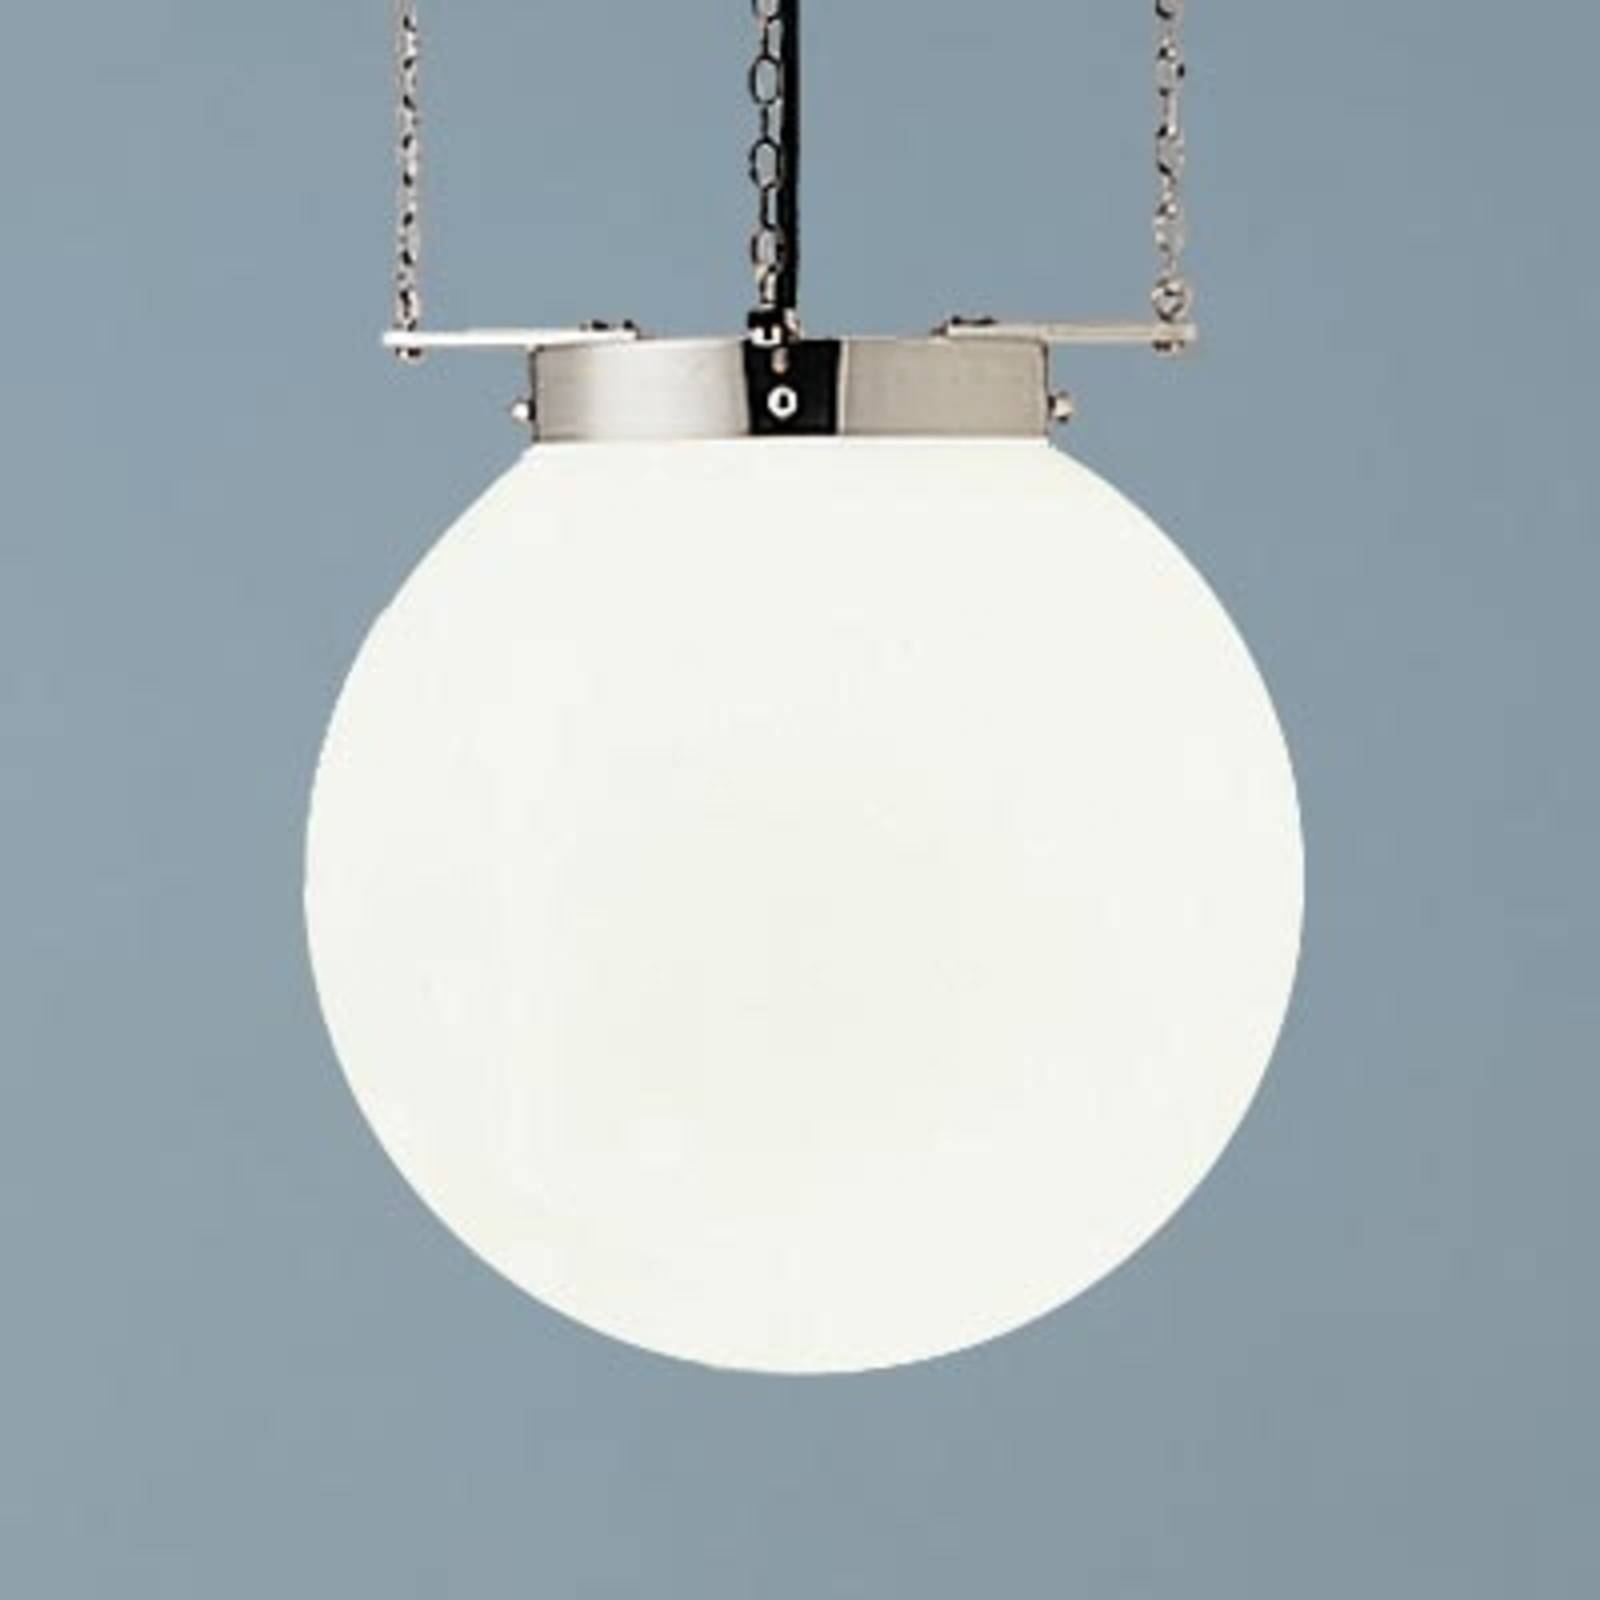 Lampa wisząca w stylu Bauhaus nikiel 30 cm